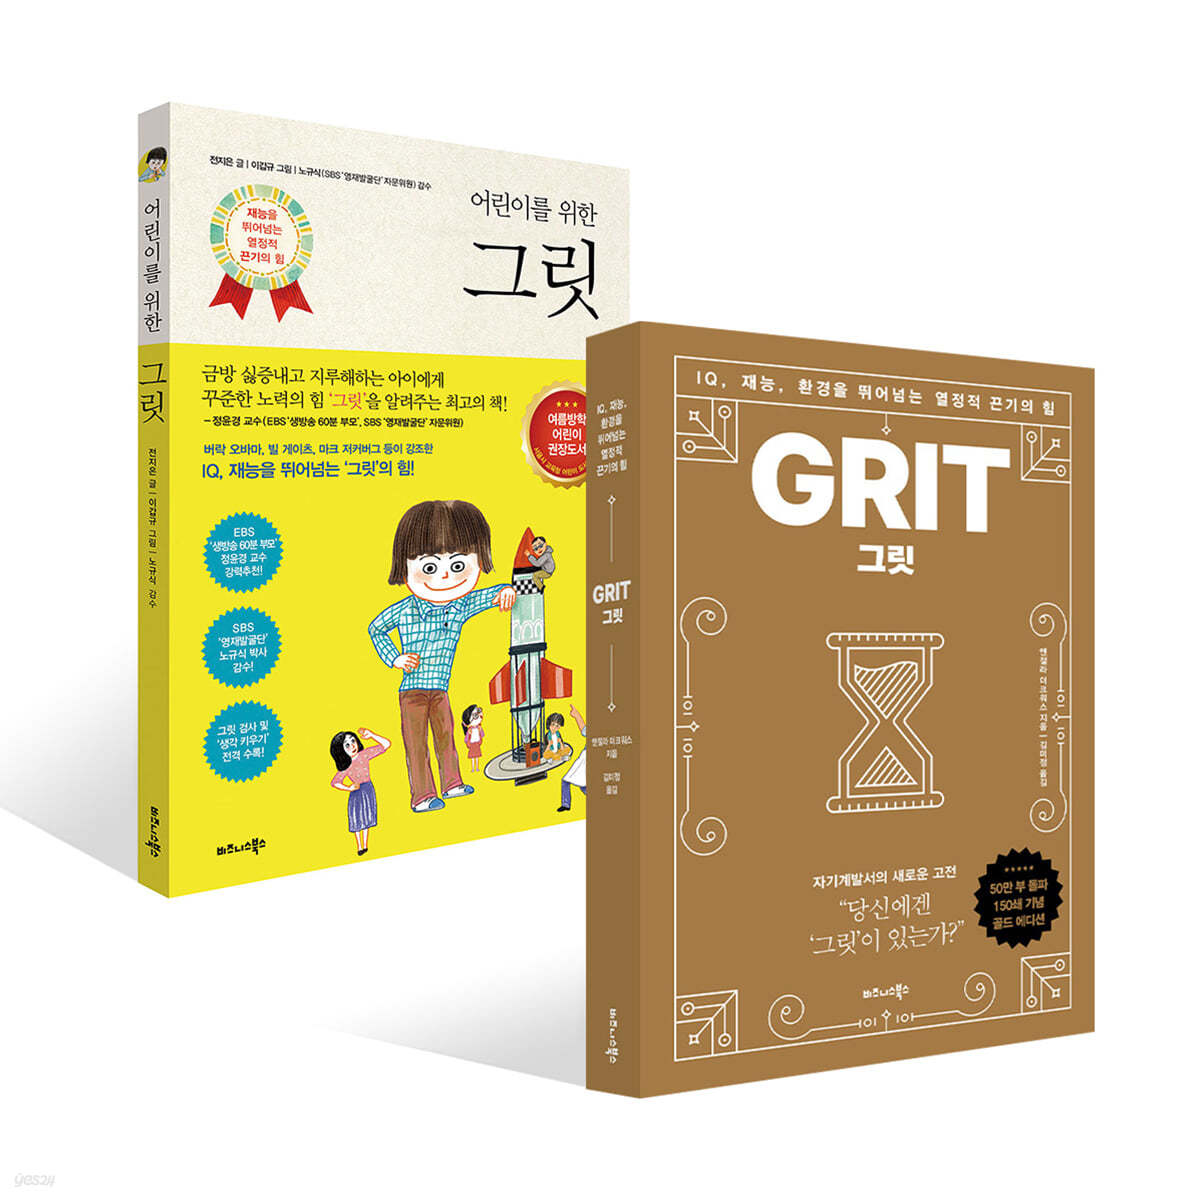 그릿 Grit (50만 부 판매 기념 리커버 골드에디션) + 어린이를 위한 그릿